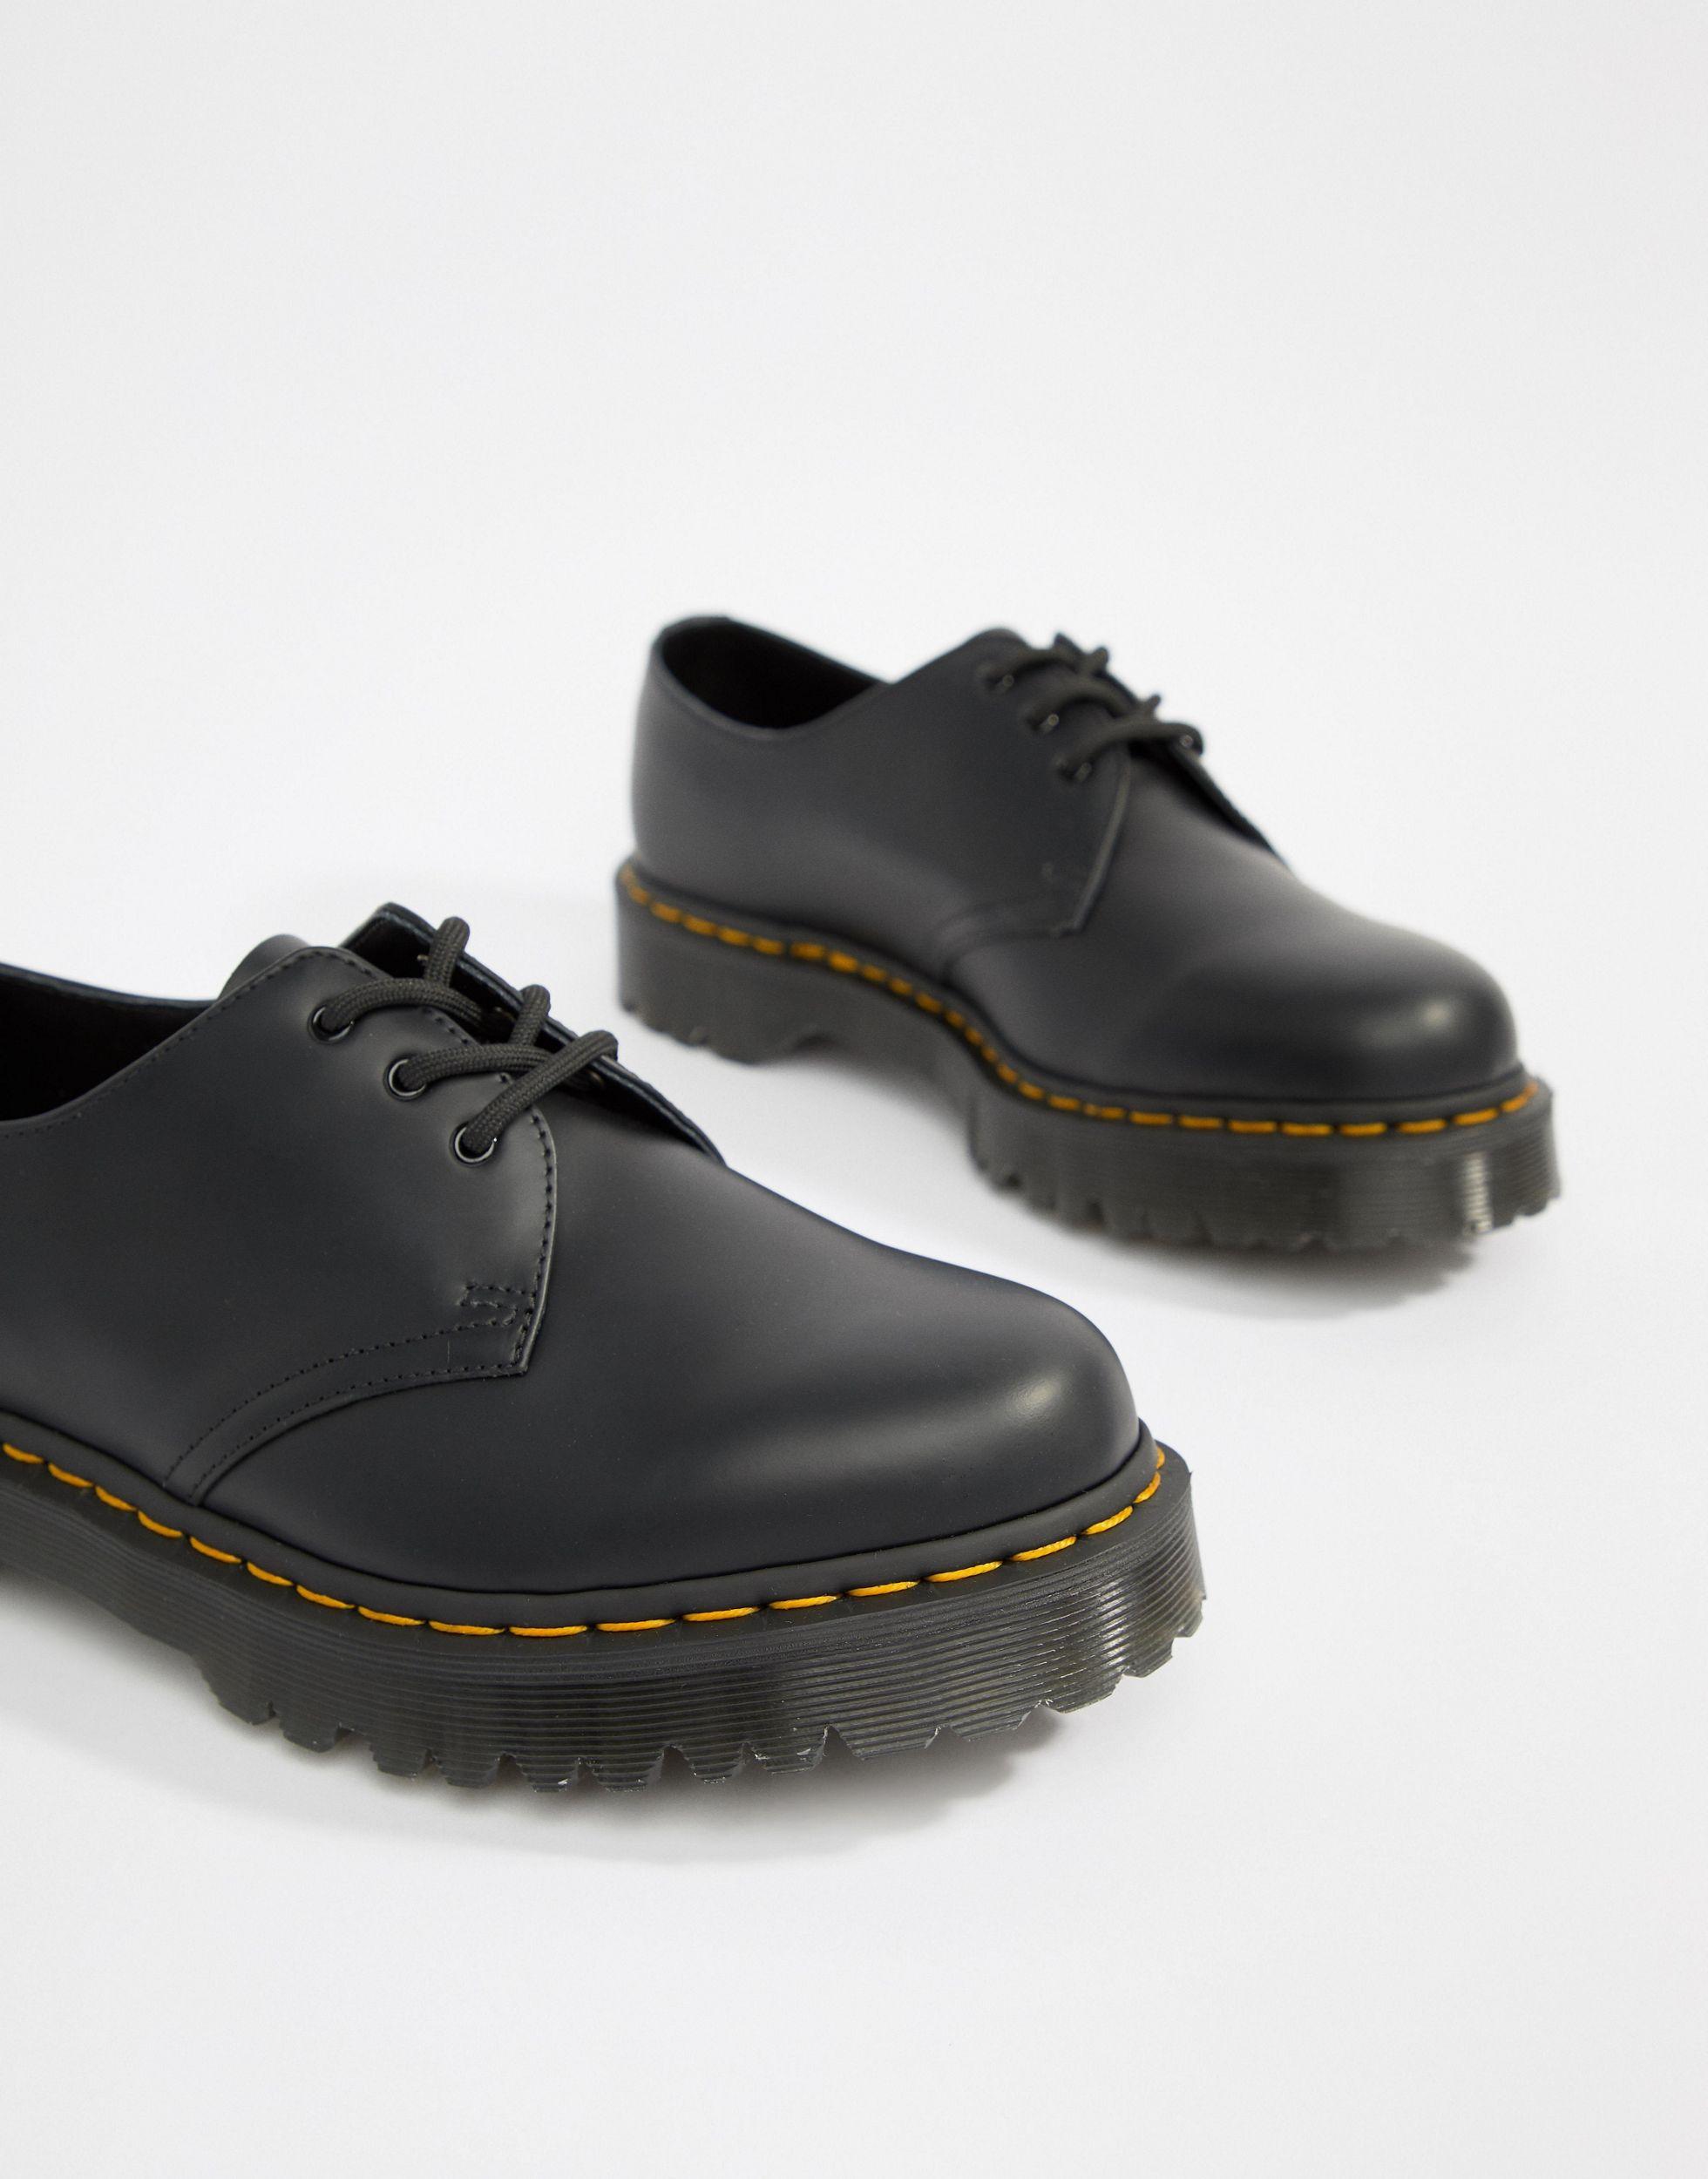 Dr. Martens 1461 Bex Platform 3-eye Shoes in Black for Men - Lyst